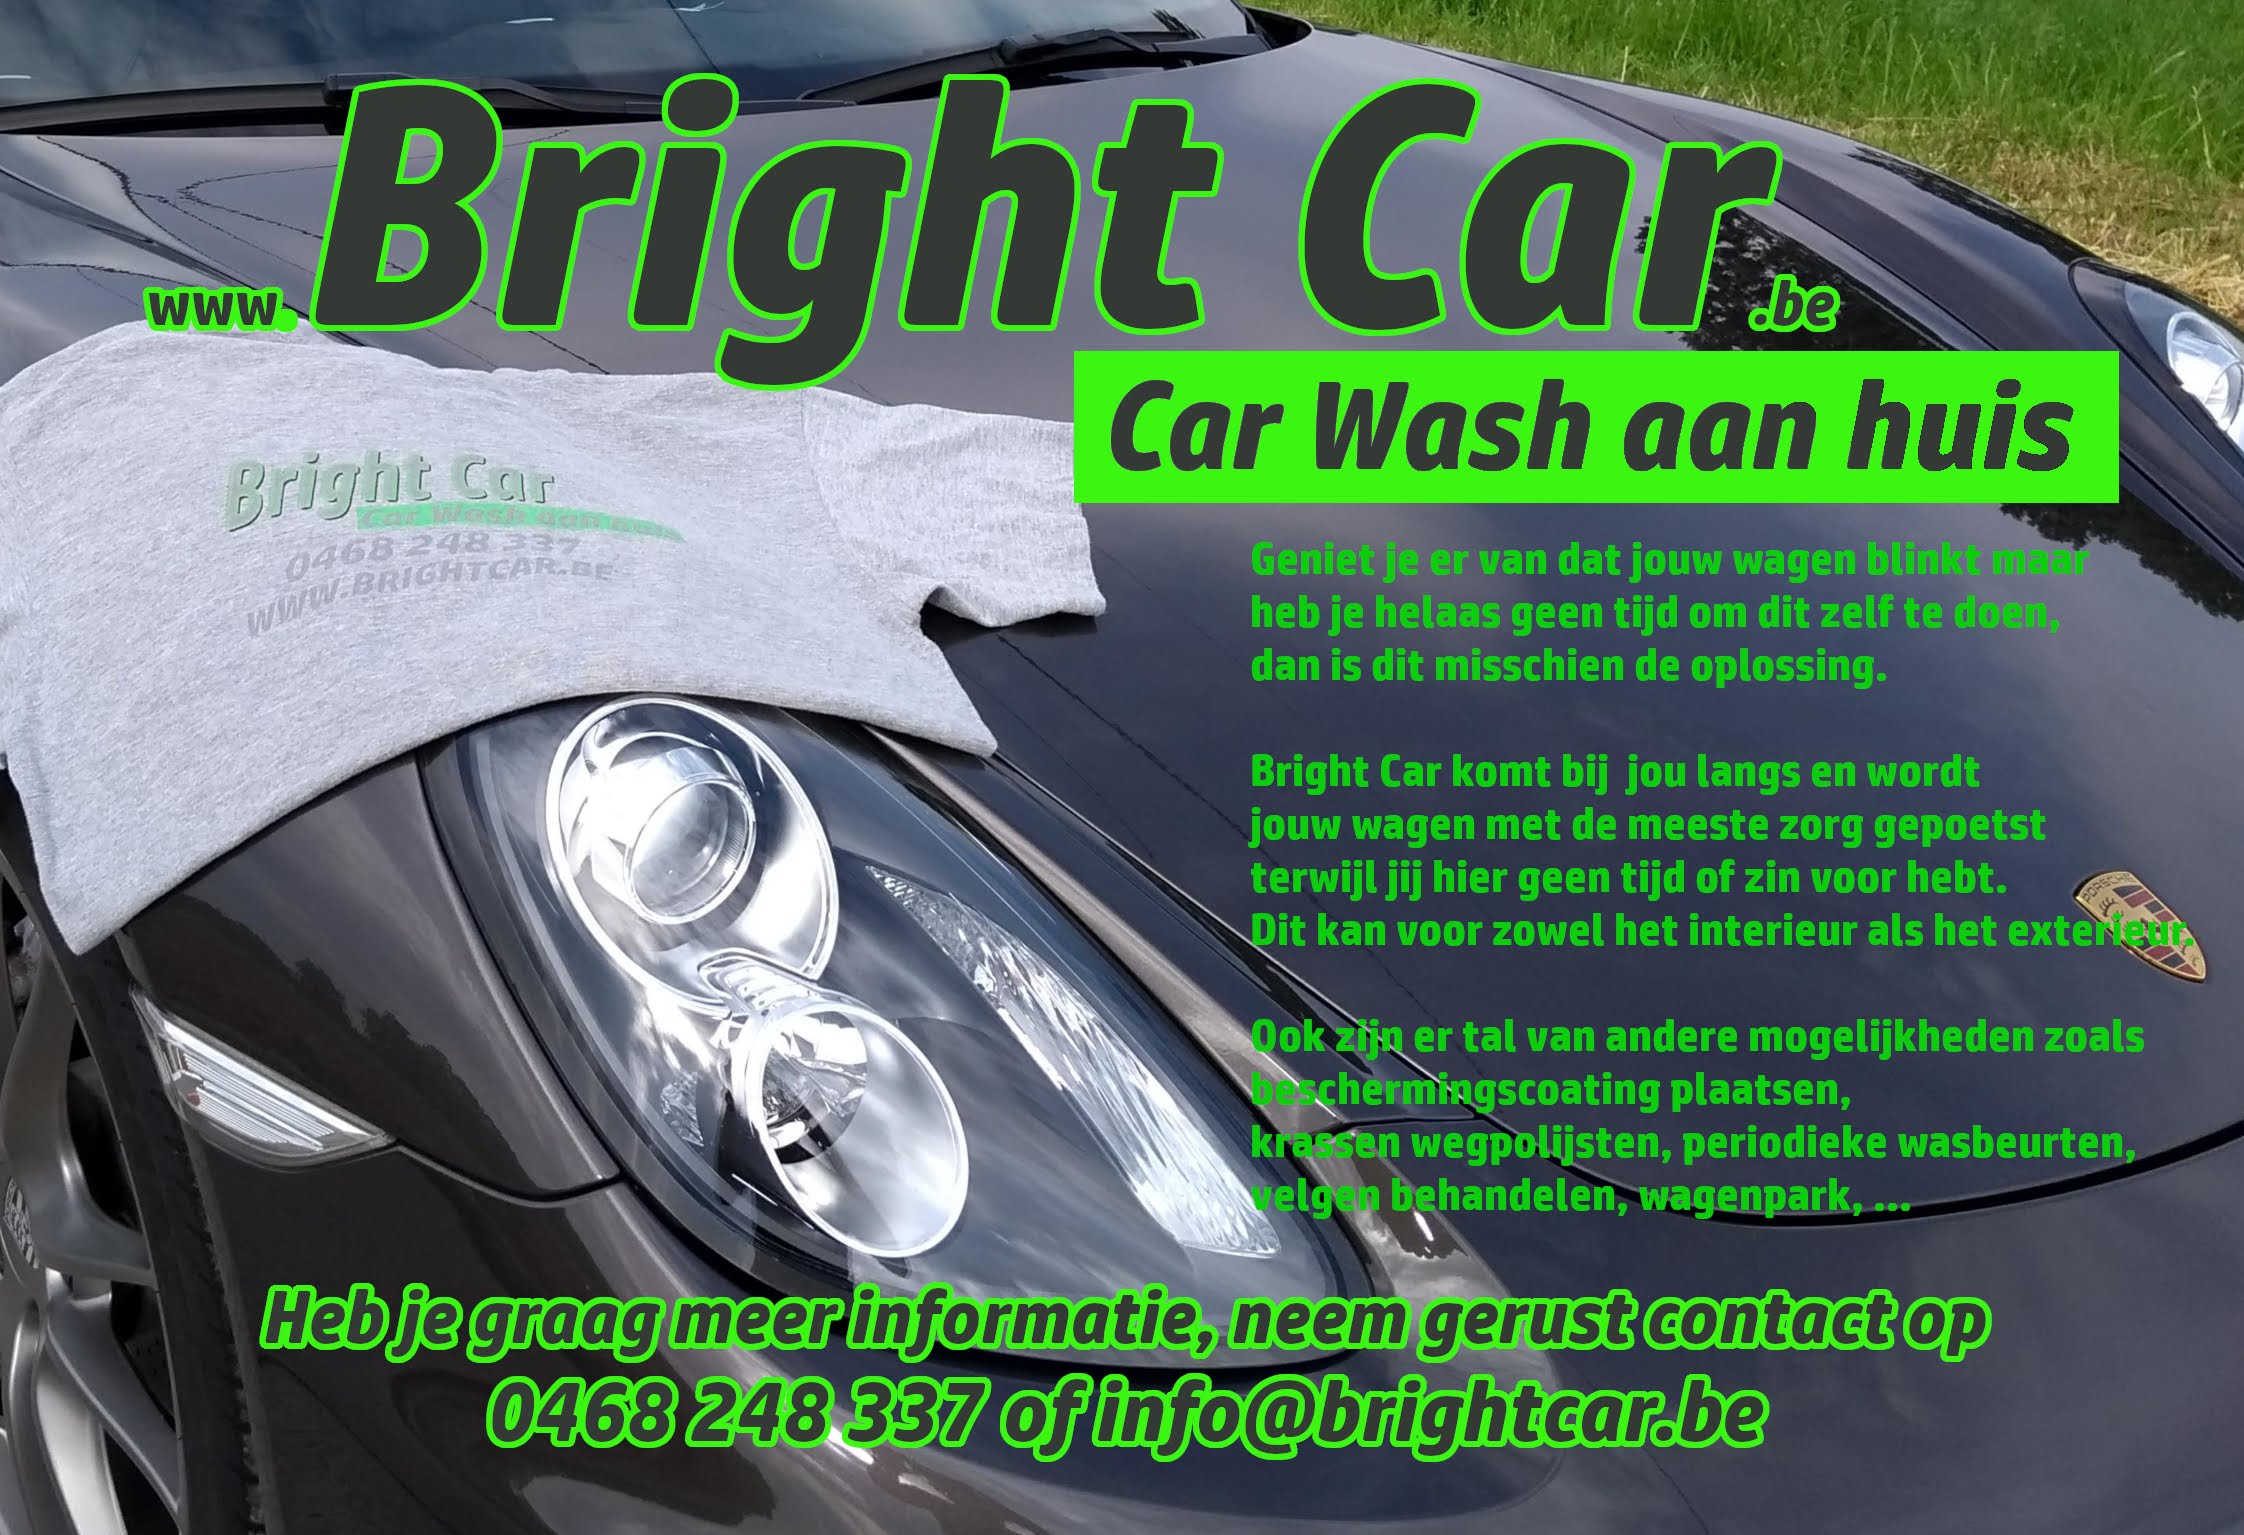 Bright Car flyer